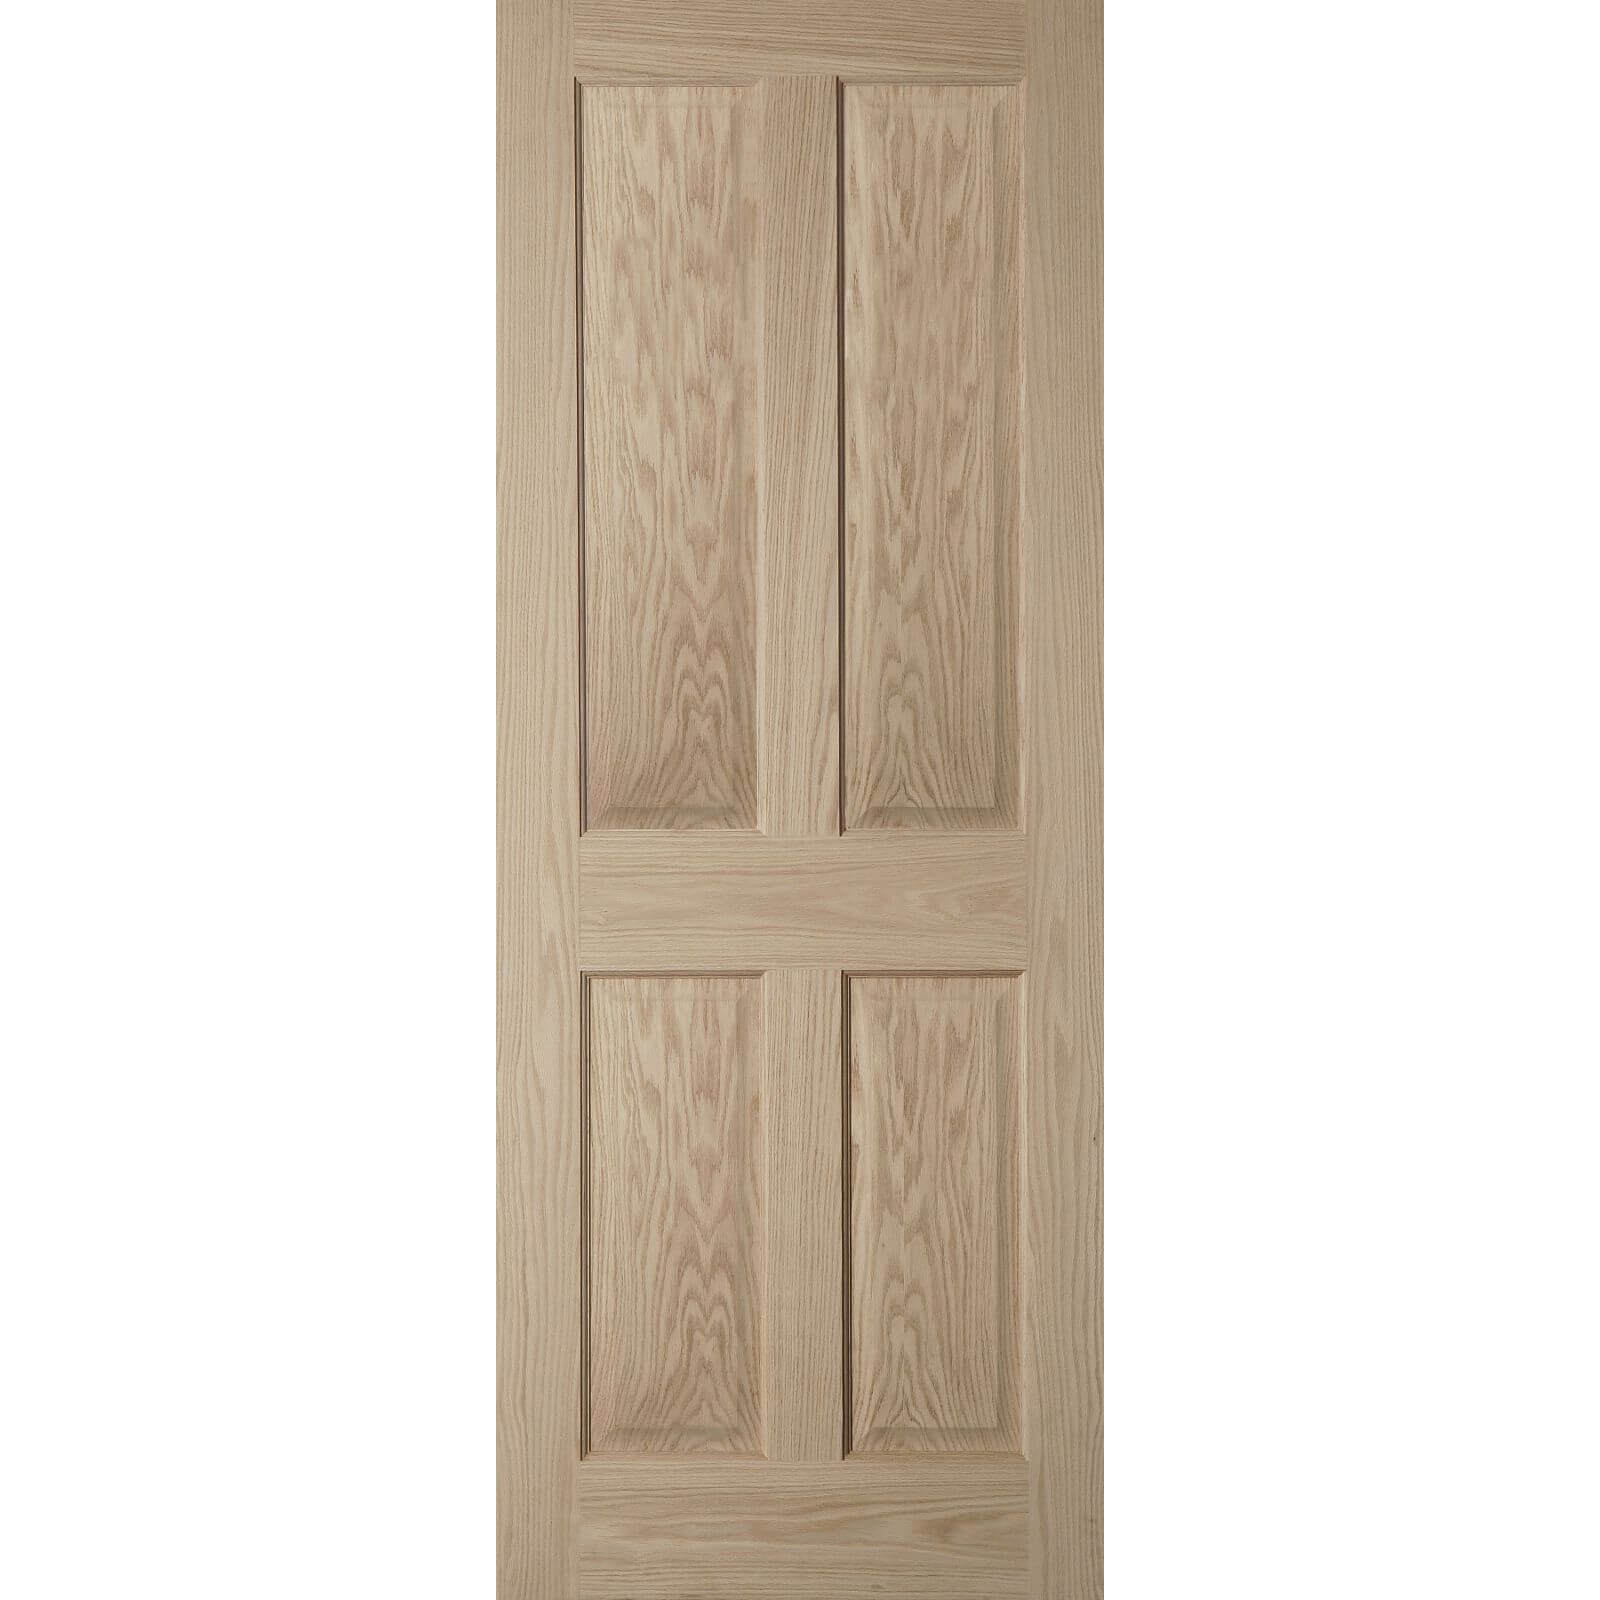 Photo of 4 Panel Oak Veneer Internal Fire Door - 686mm Wide